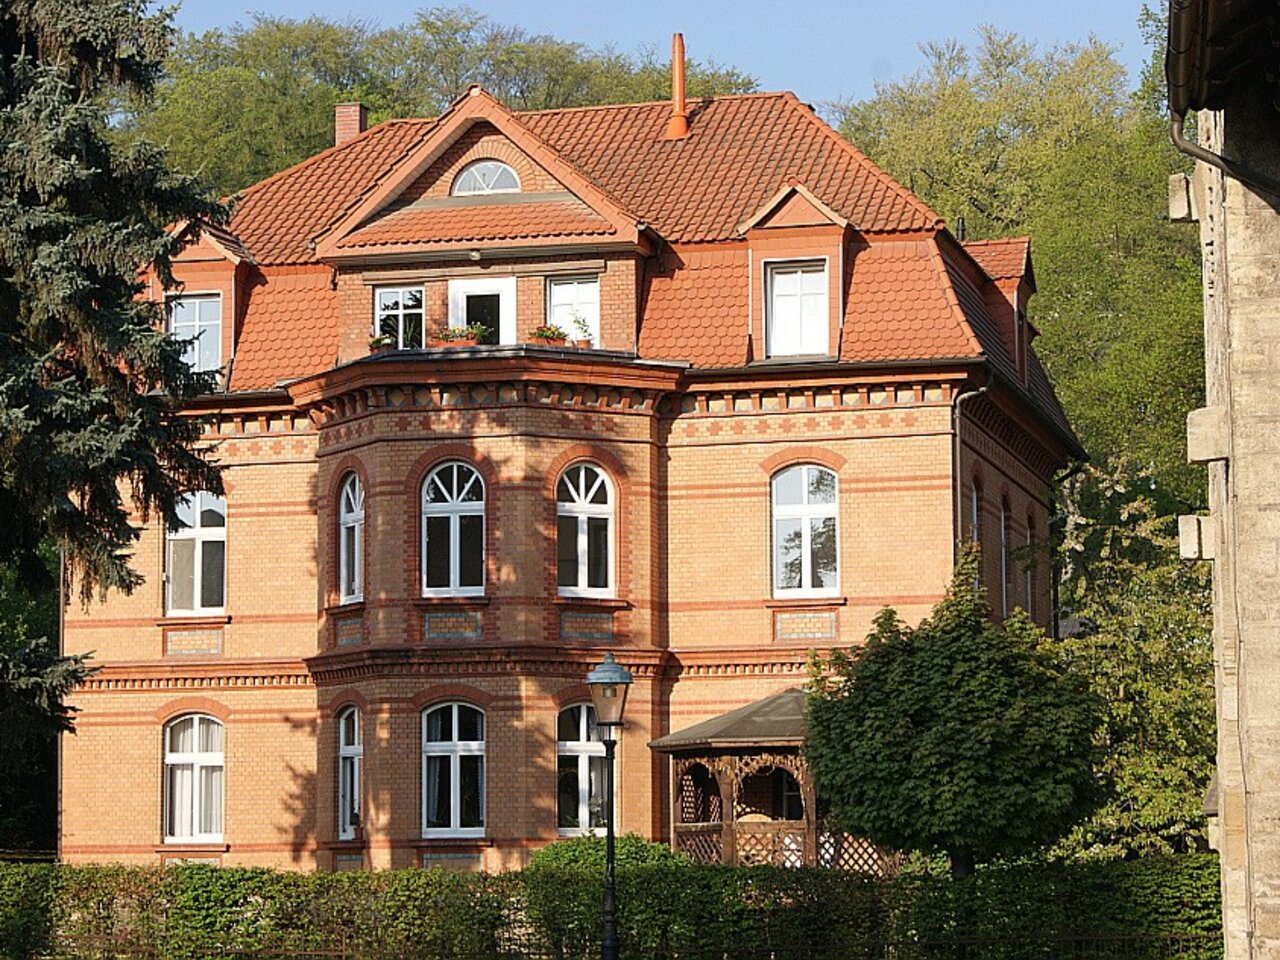 Großzügige Wohnung mit Gartennutzung nahe dem Stadtzentrum Arnstadts-Hausansicht